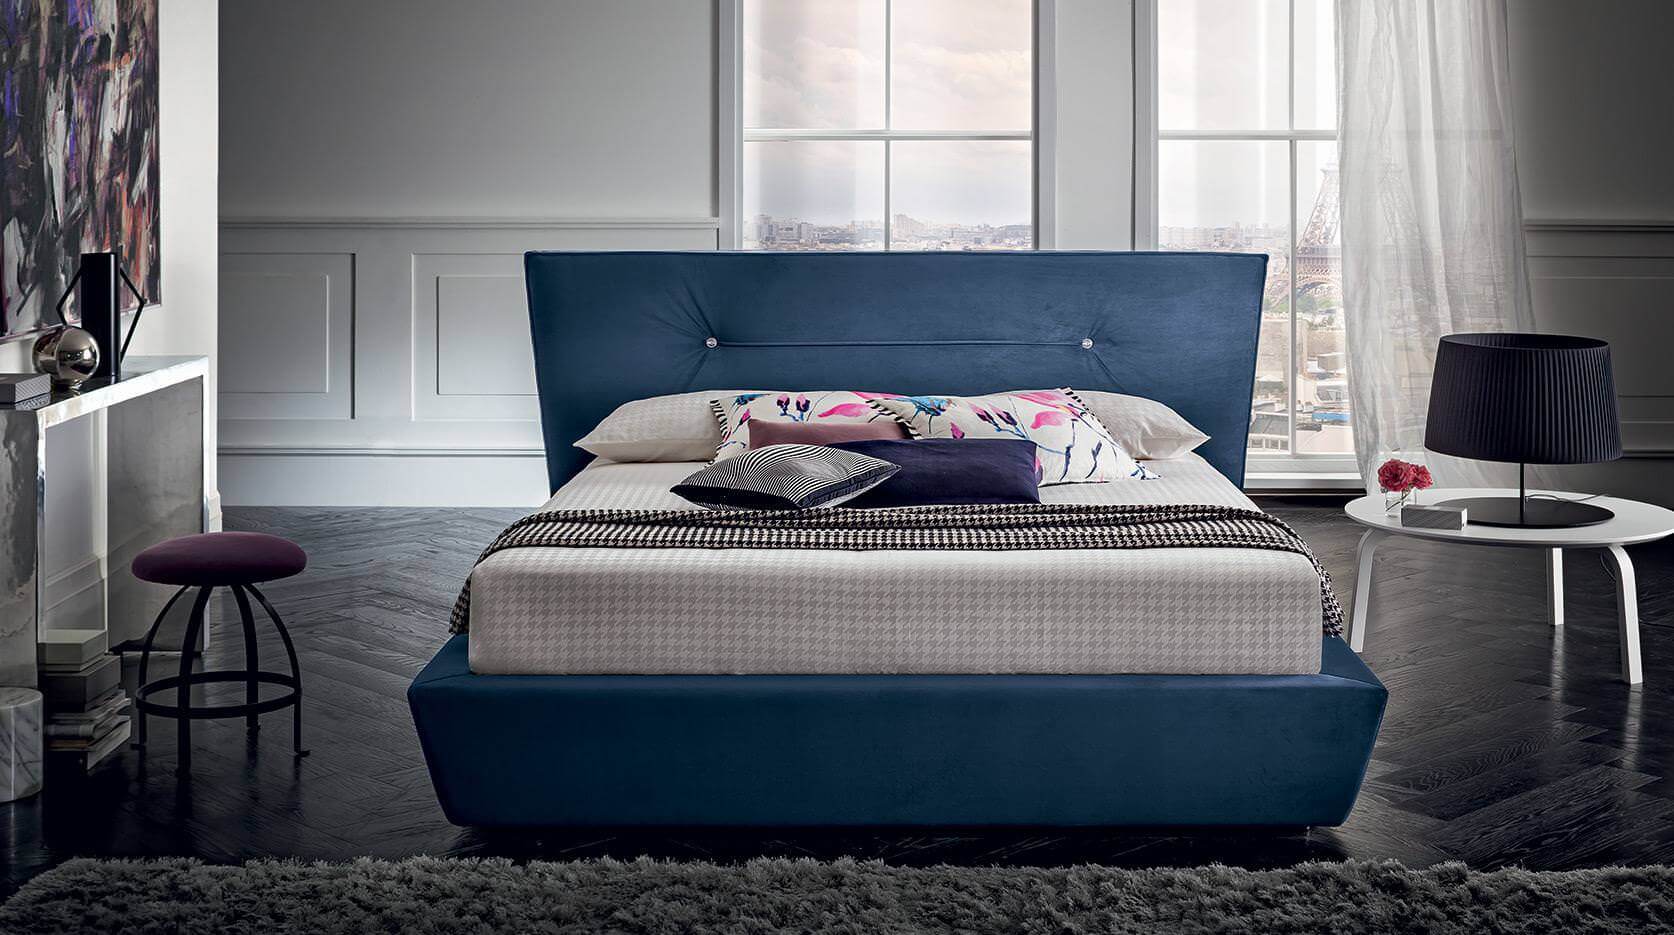 Chris franciaágy geometriai vonalai szigorúvá, de kompromisszumkésszé teszik, így az ágy bármilyen környezetben megállja a helyét